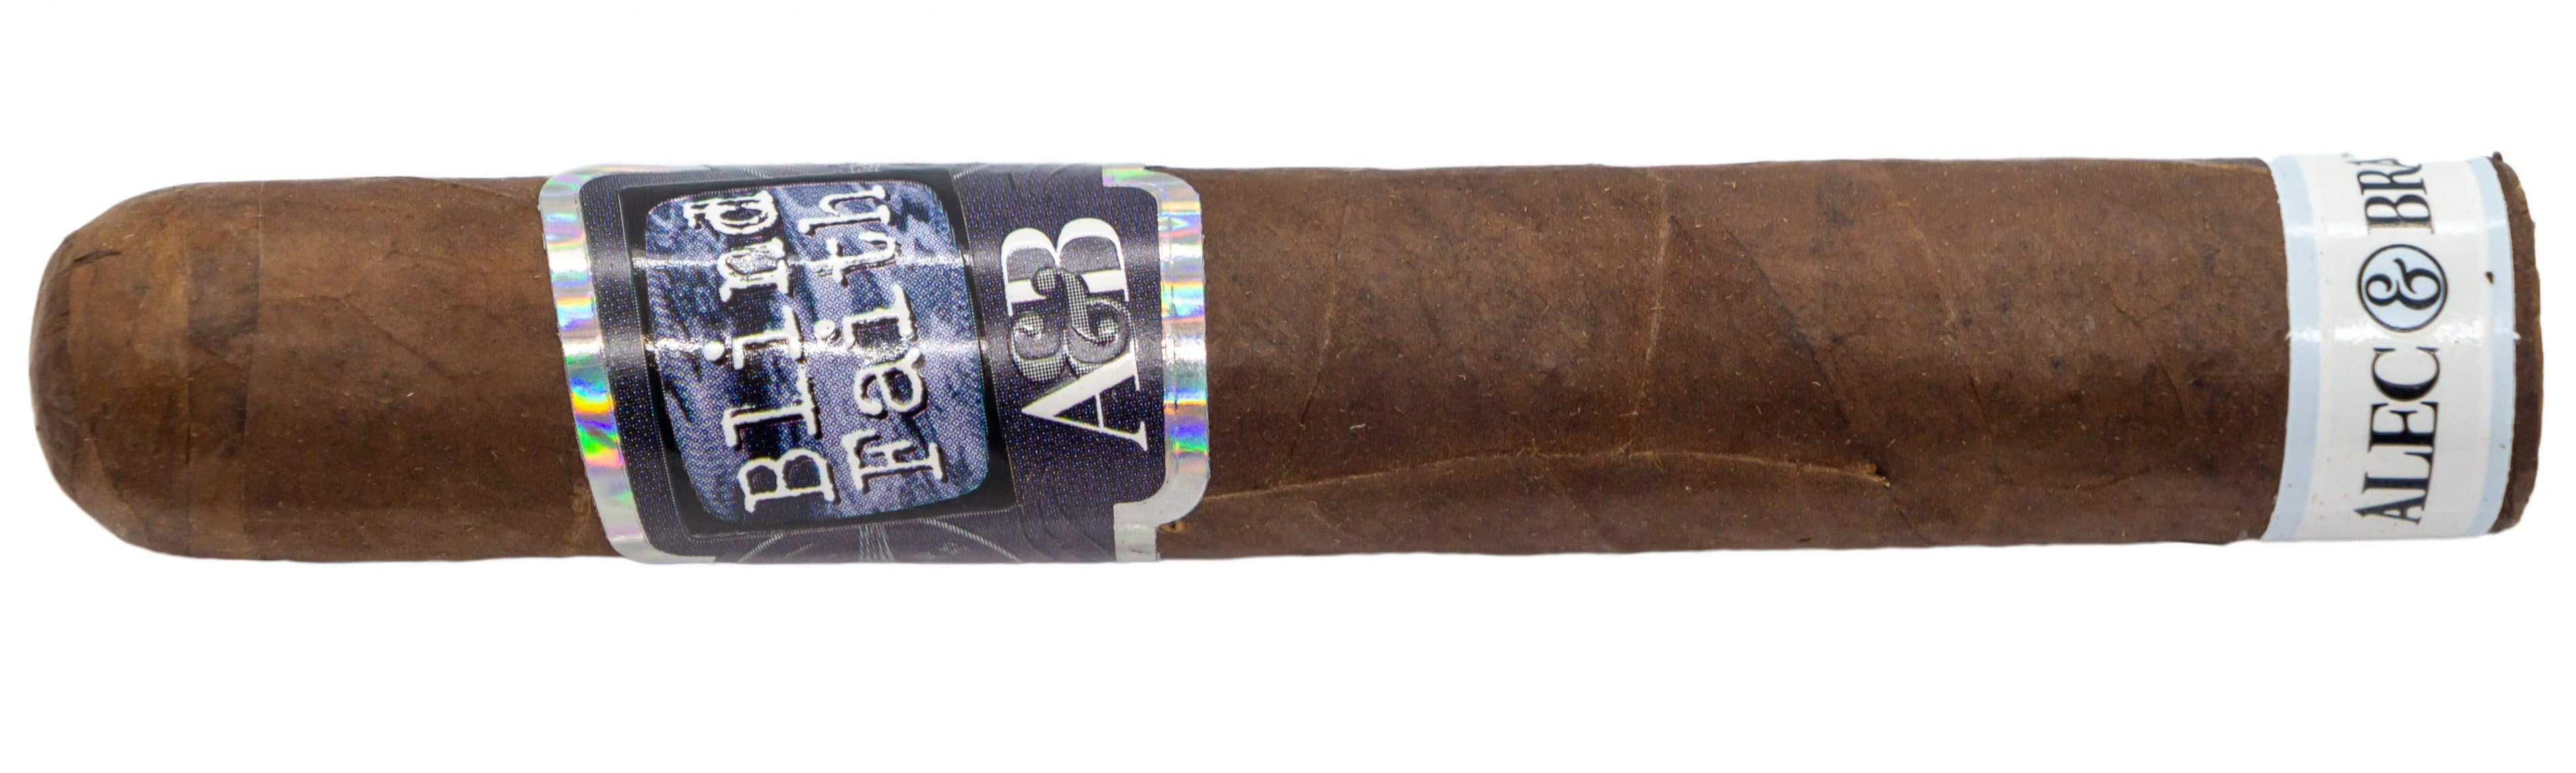 aquatico 45 cigar for sale